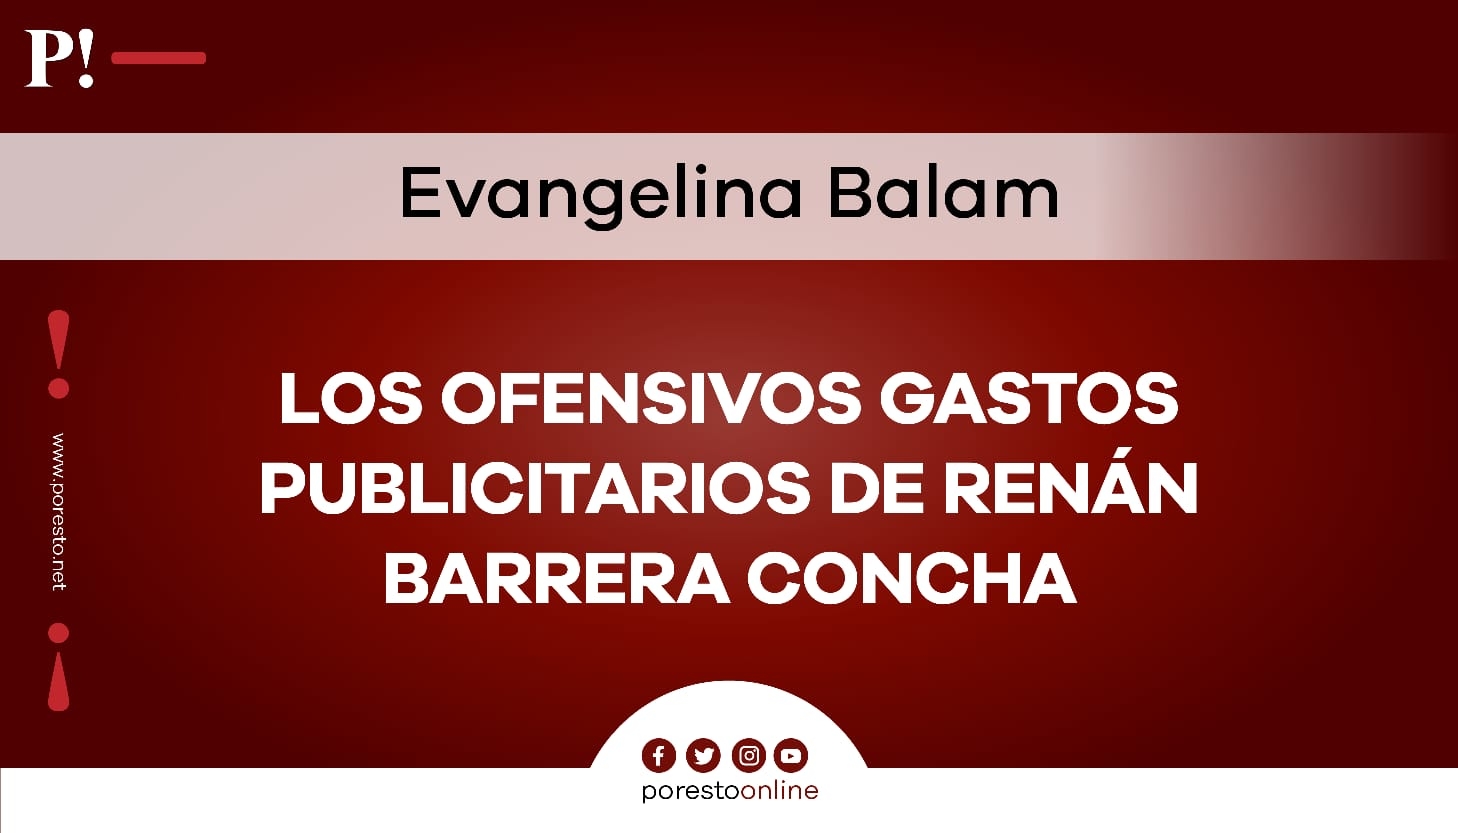 Los ofensivos gastos publicitarios de Renán Barrera Concha